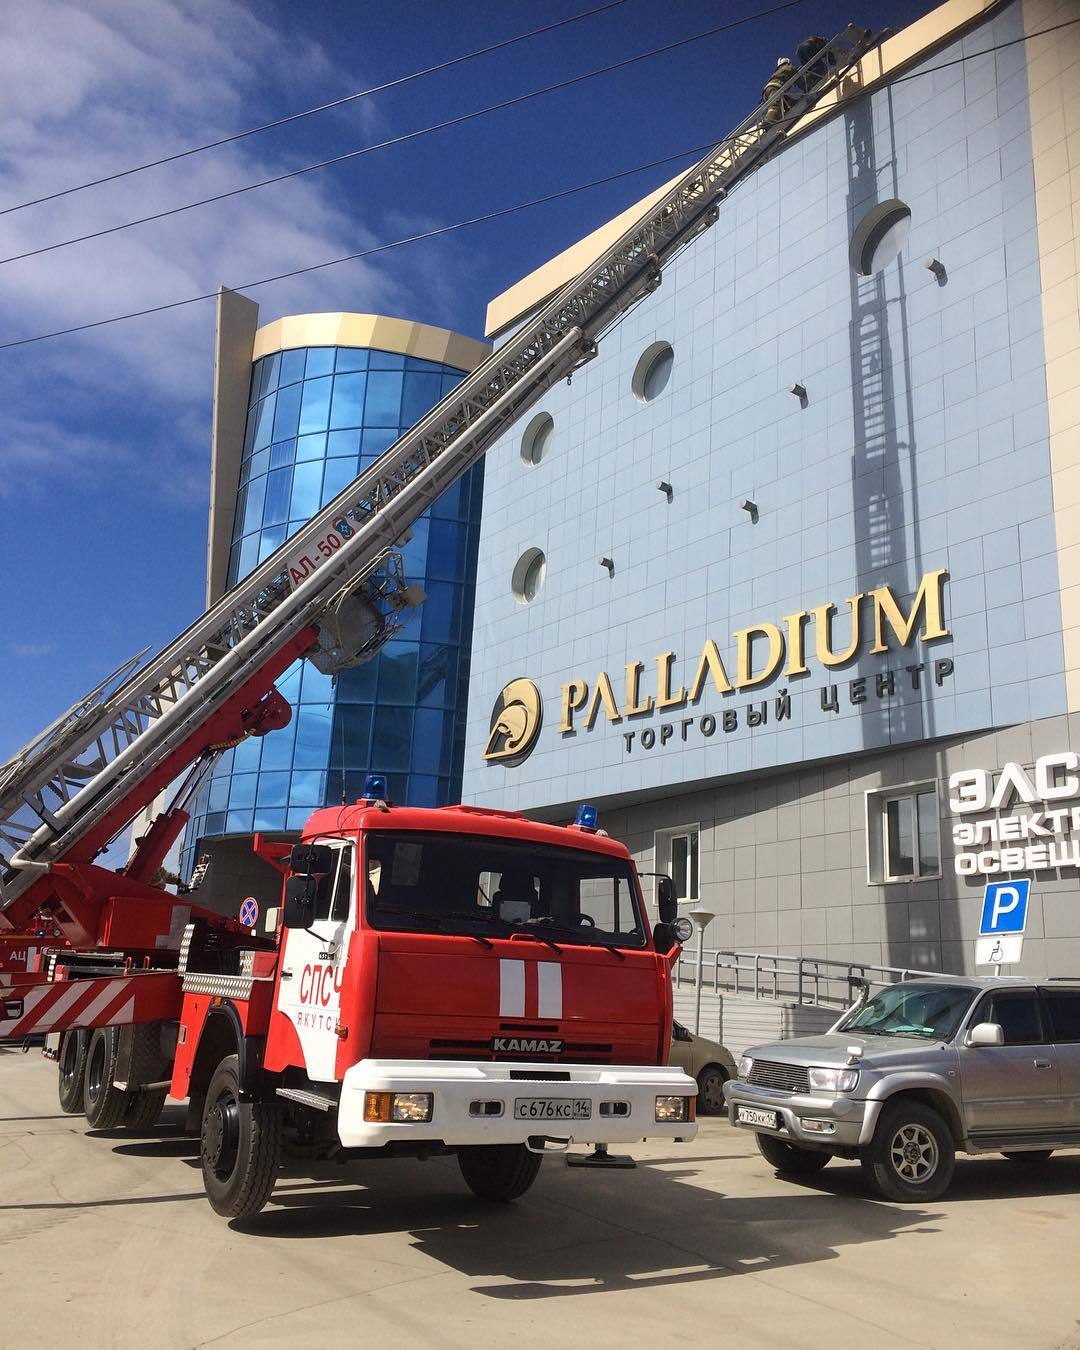 Фотовзгляд: В Якутске эвакуировали торговый центр "Палладиум"